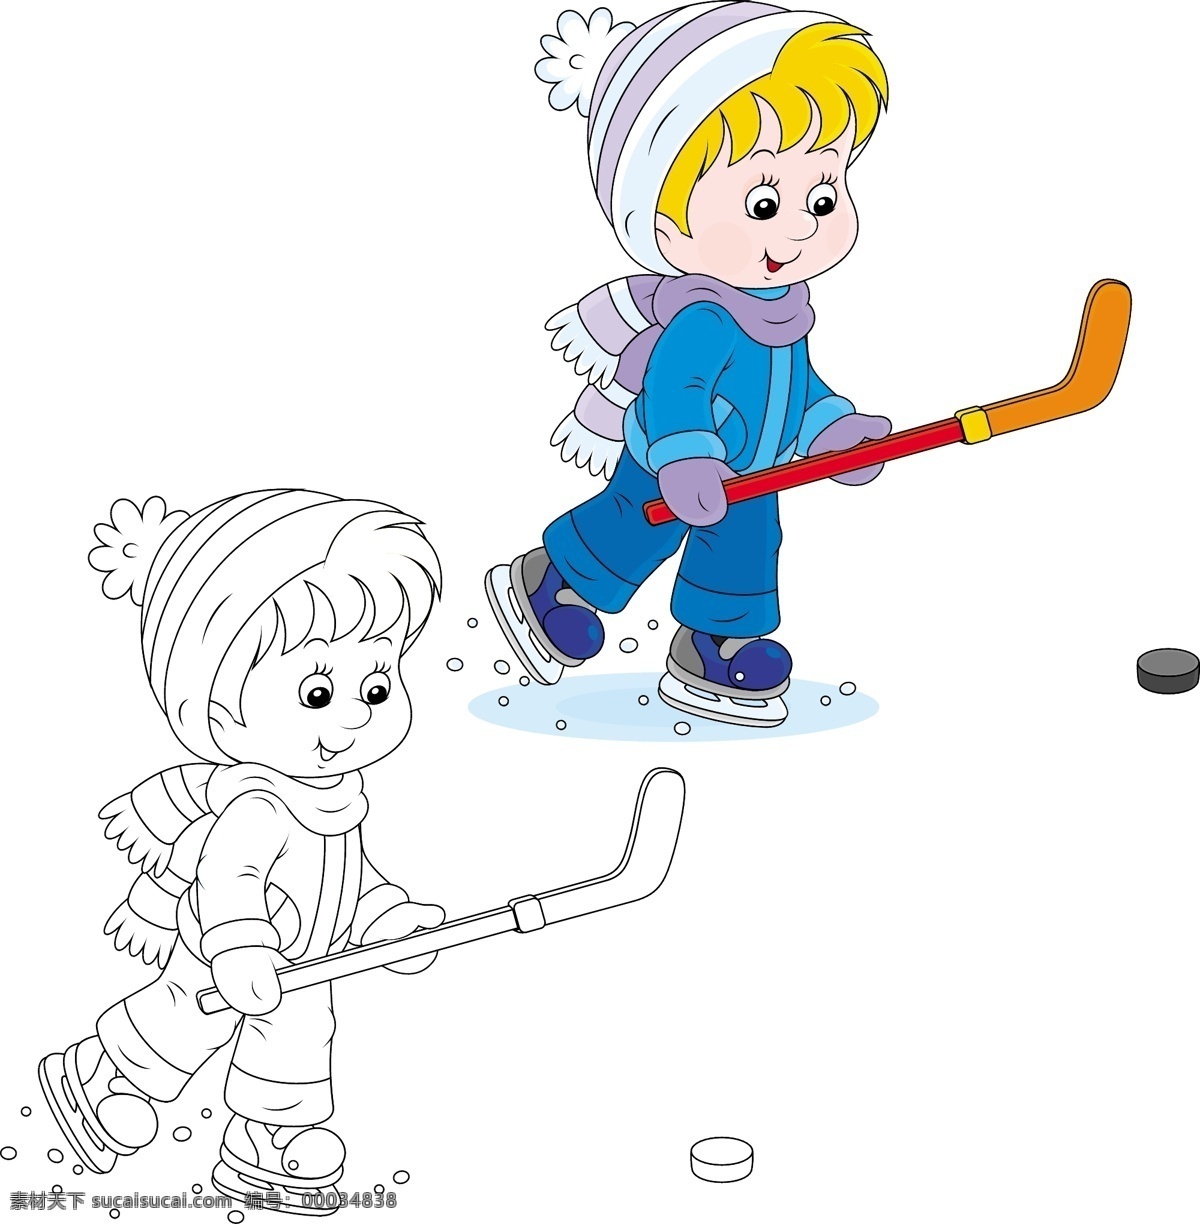 冰球 男孩 卡通画 打冰球 儿童 人物 卡通形象 矢量人物 矢量素材 白色